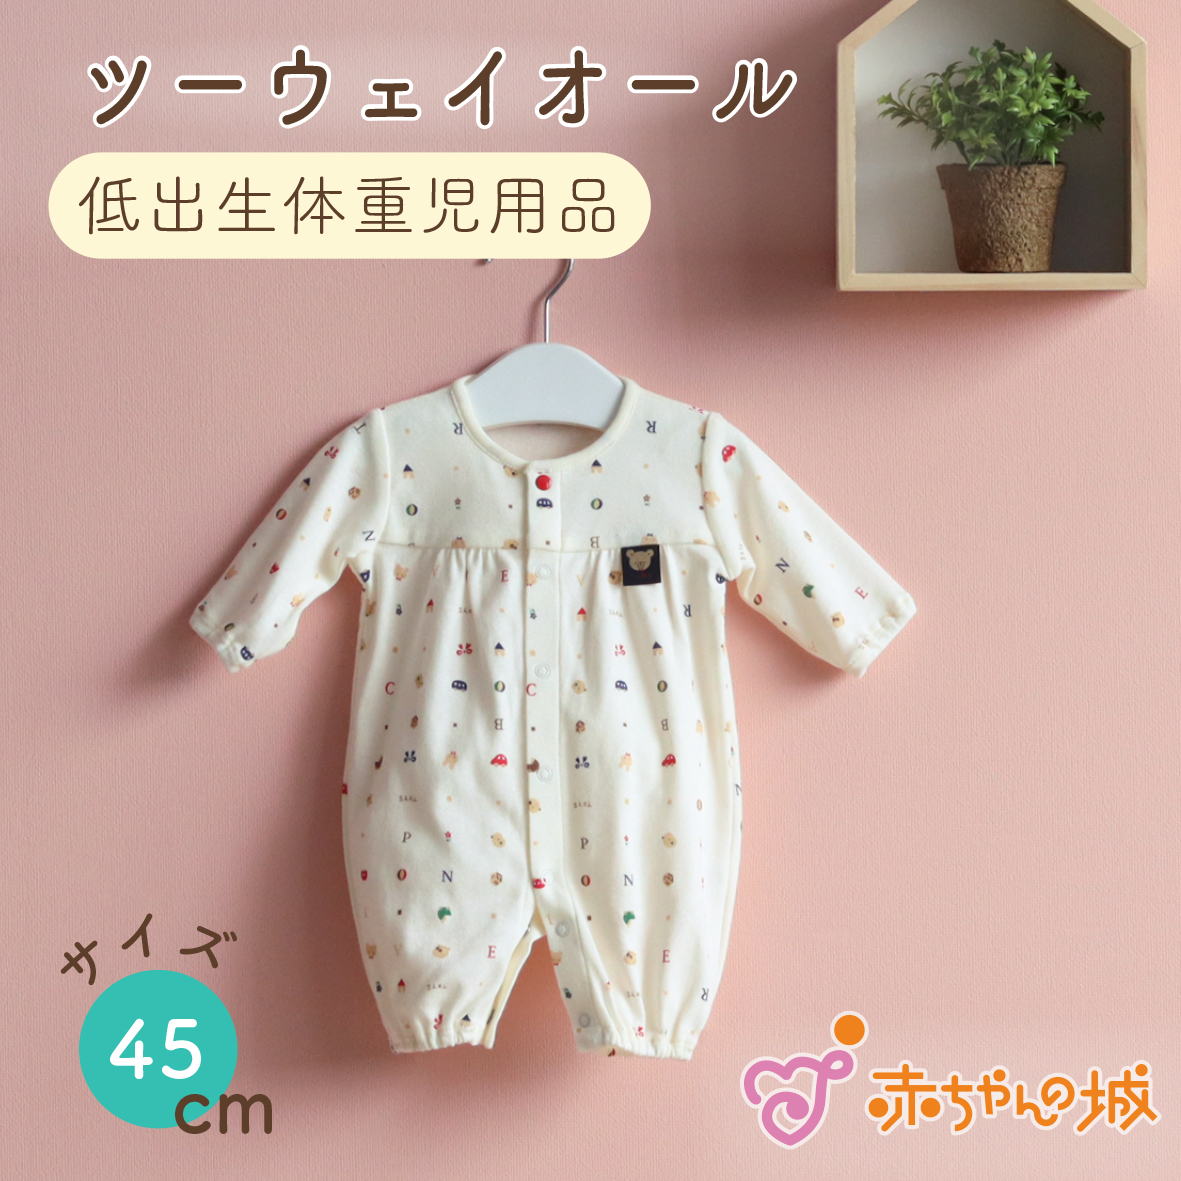 日本製 低出生体重児 ツーウェイオール 45cm ベビー服 ベビーウェア 